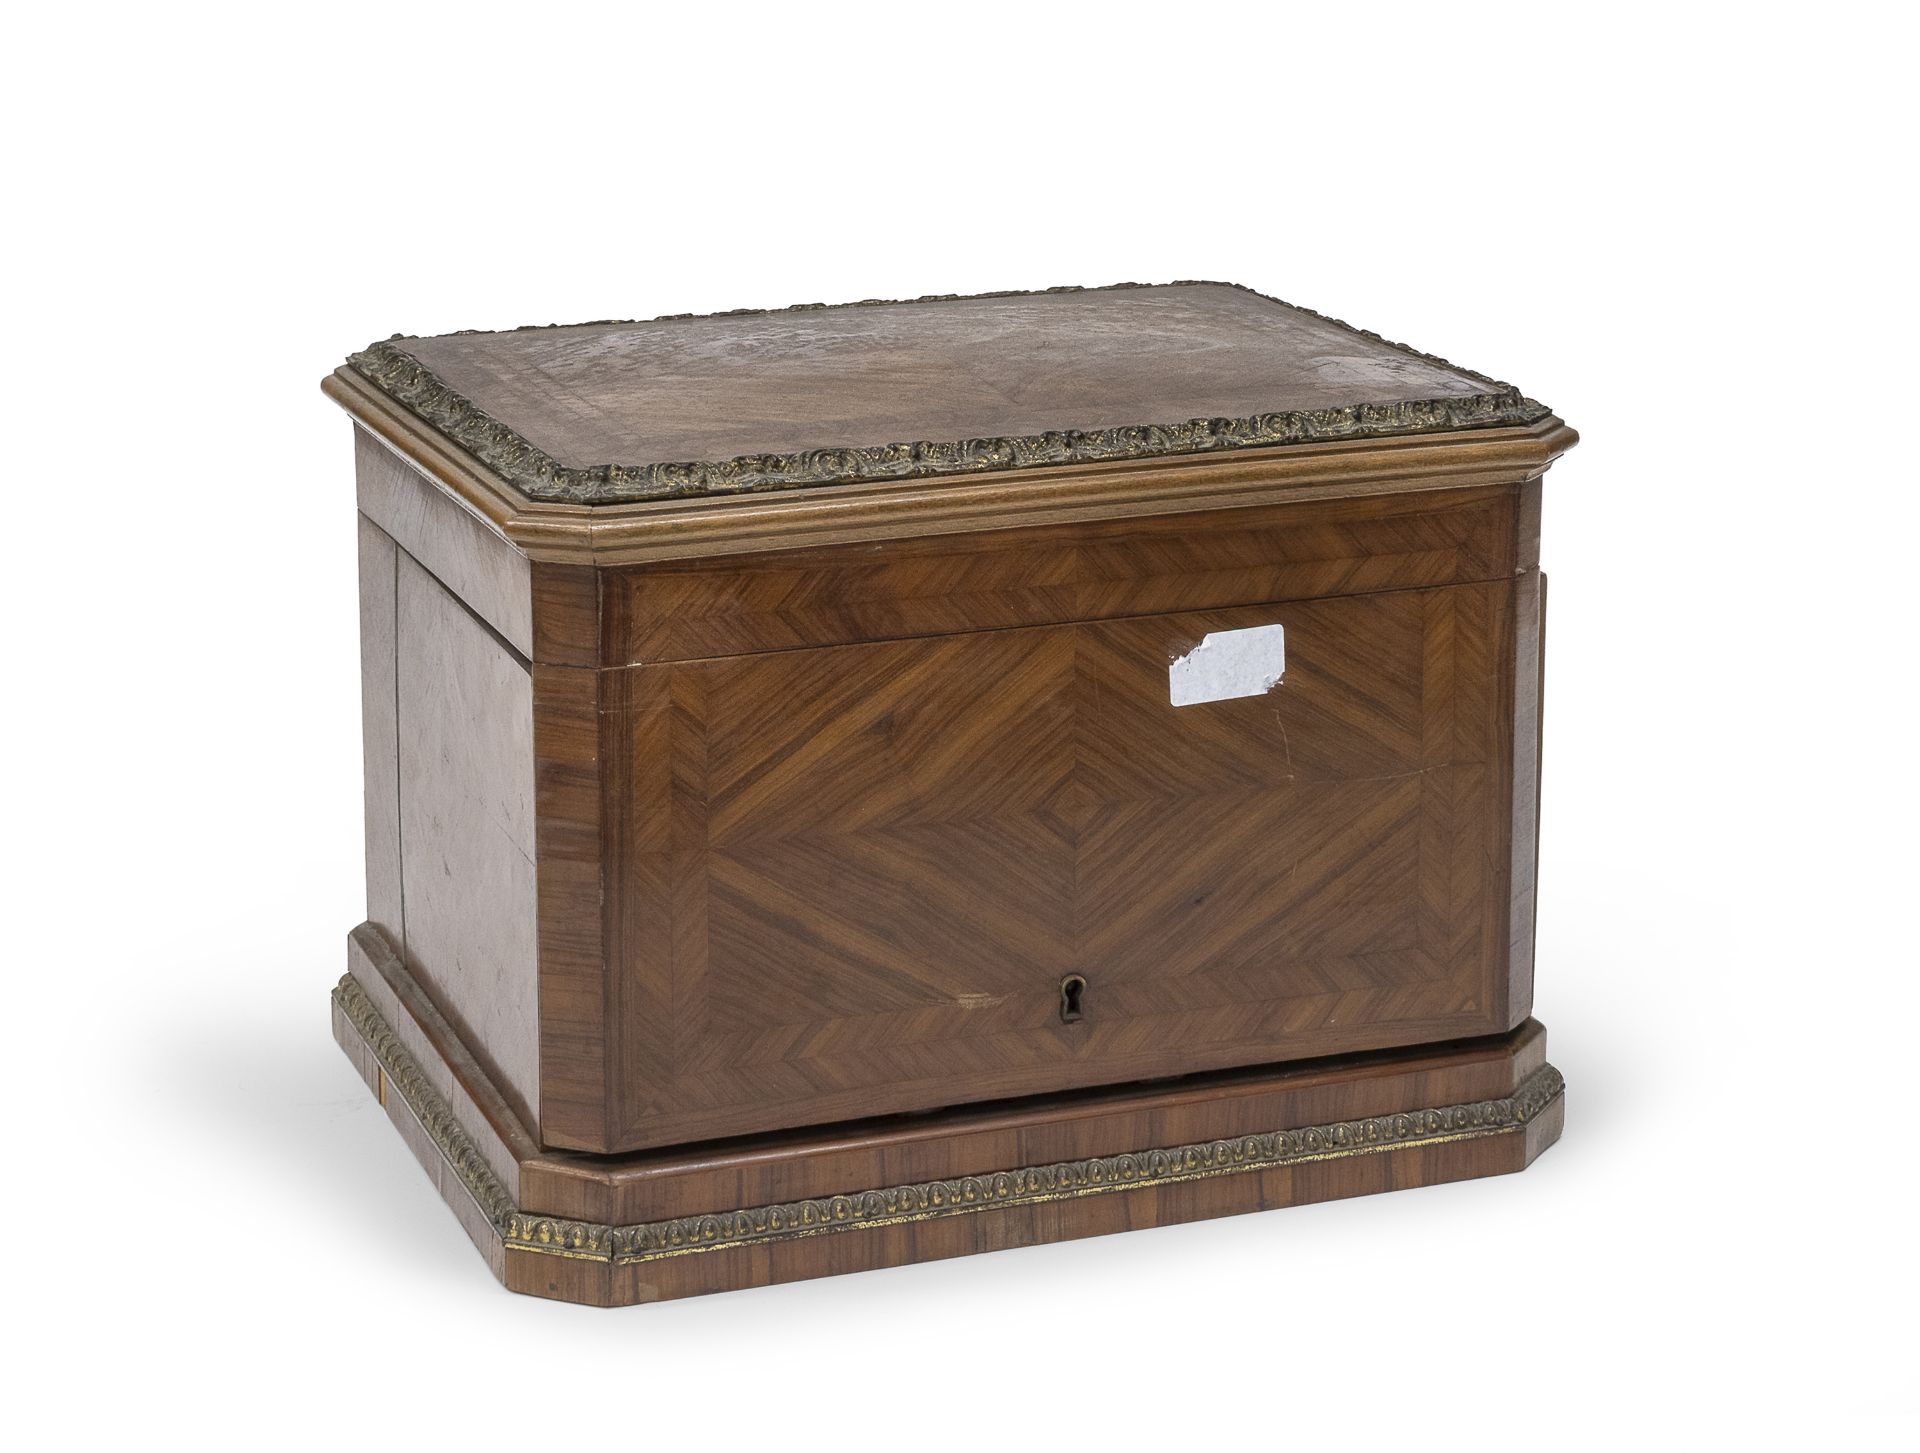 LIQUOR BOX IN BOIS DE ROSE 19TH CENTURY - Image 2 of 2